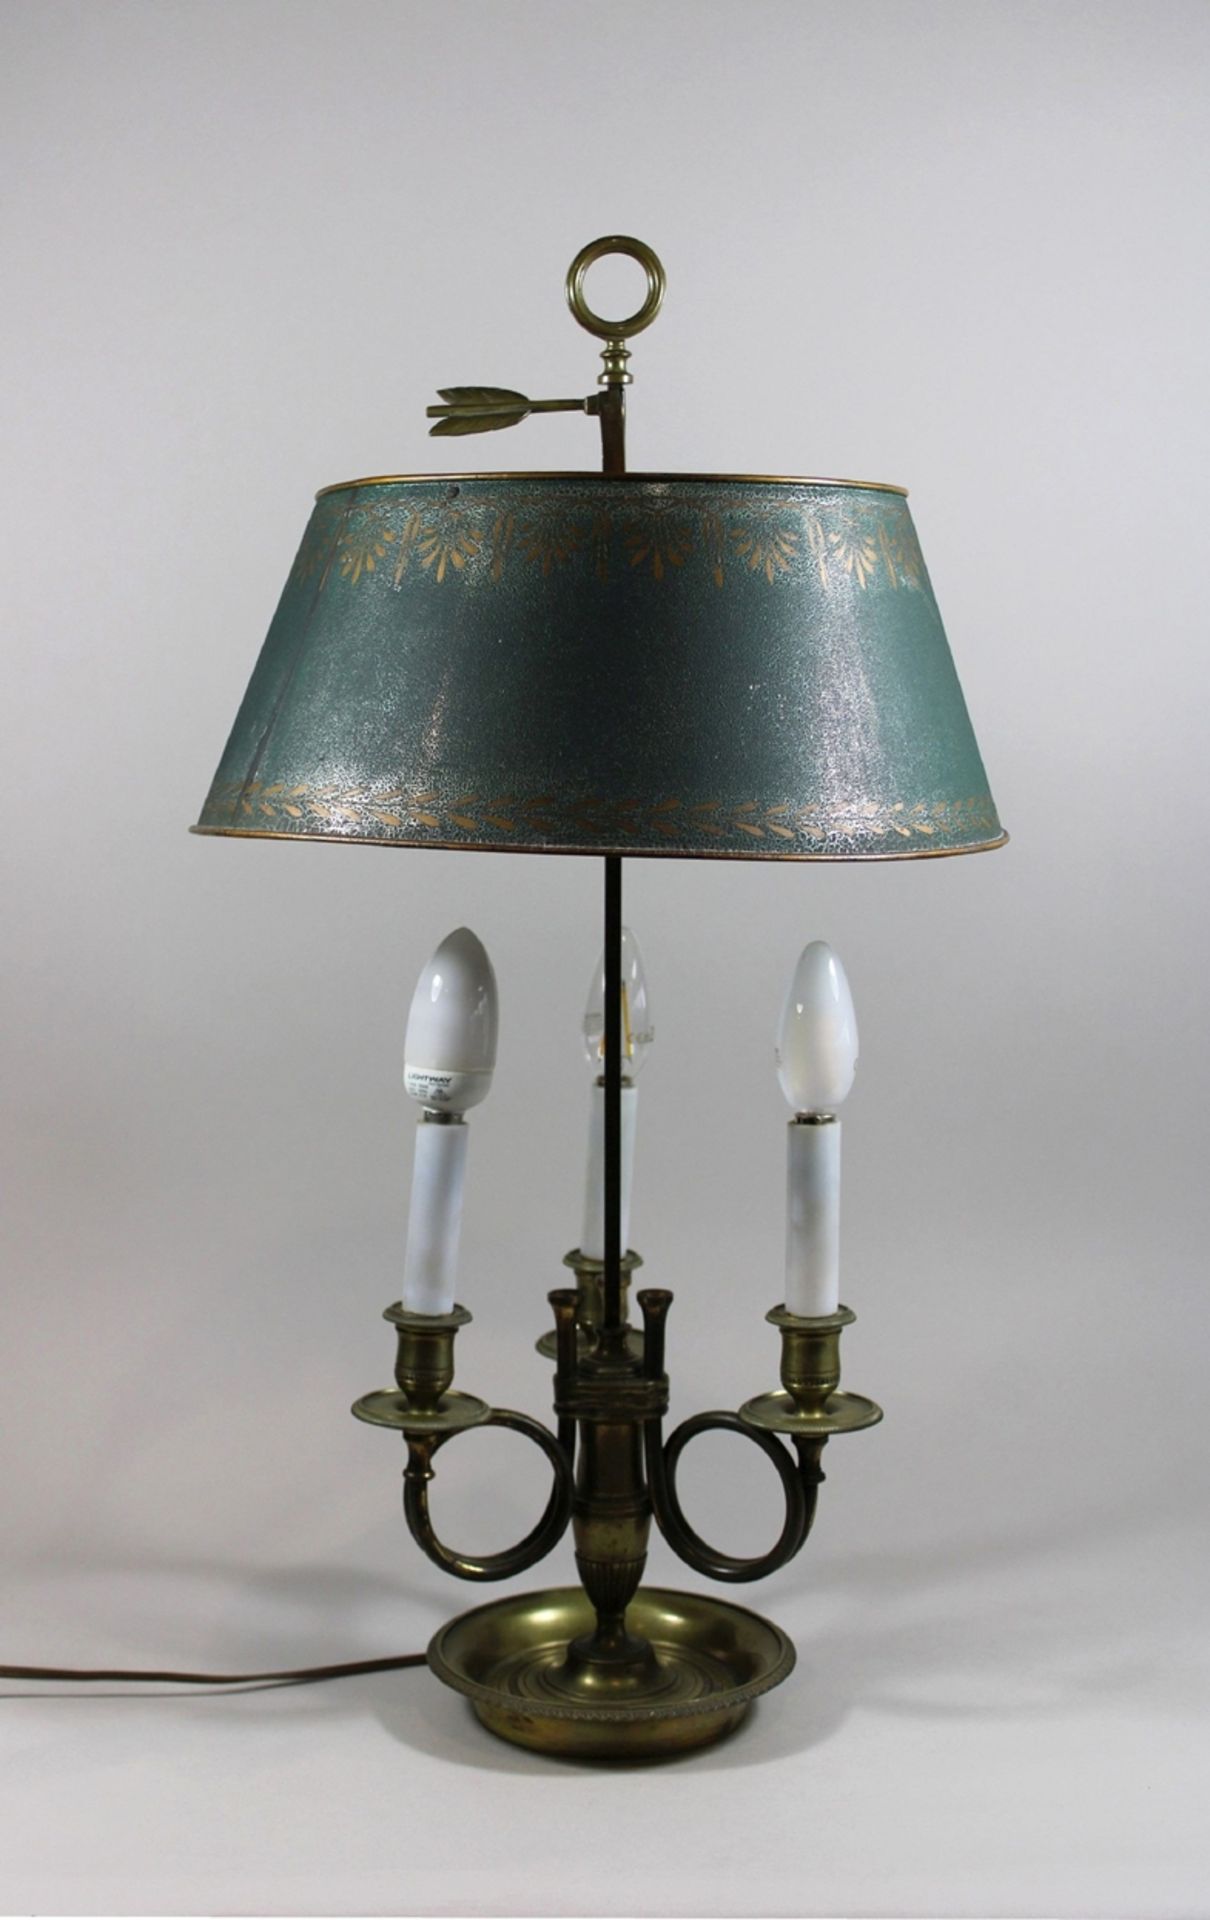 Bouillotte-Lampe, Frankreich, 20. Jh., Bronze und Zinn, Metallschirm und drei elektrifizierten Kerz